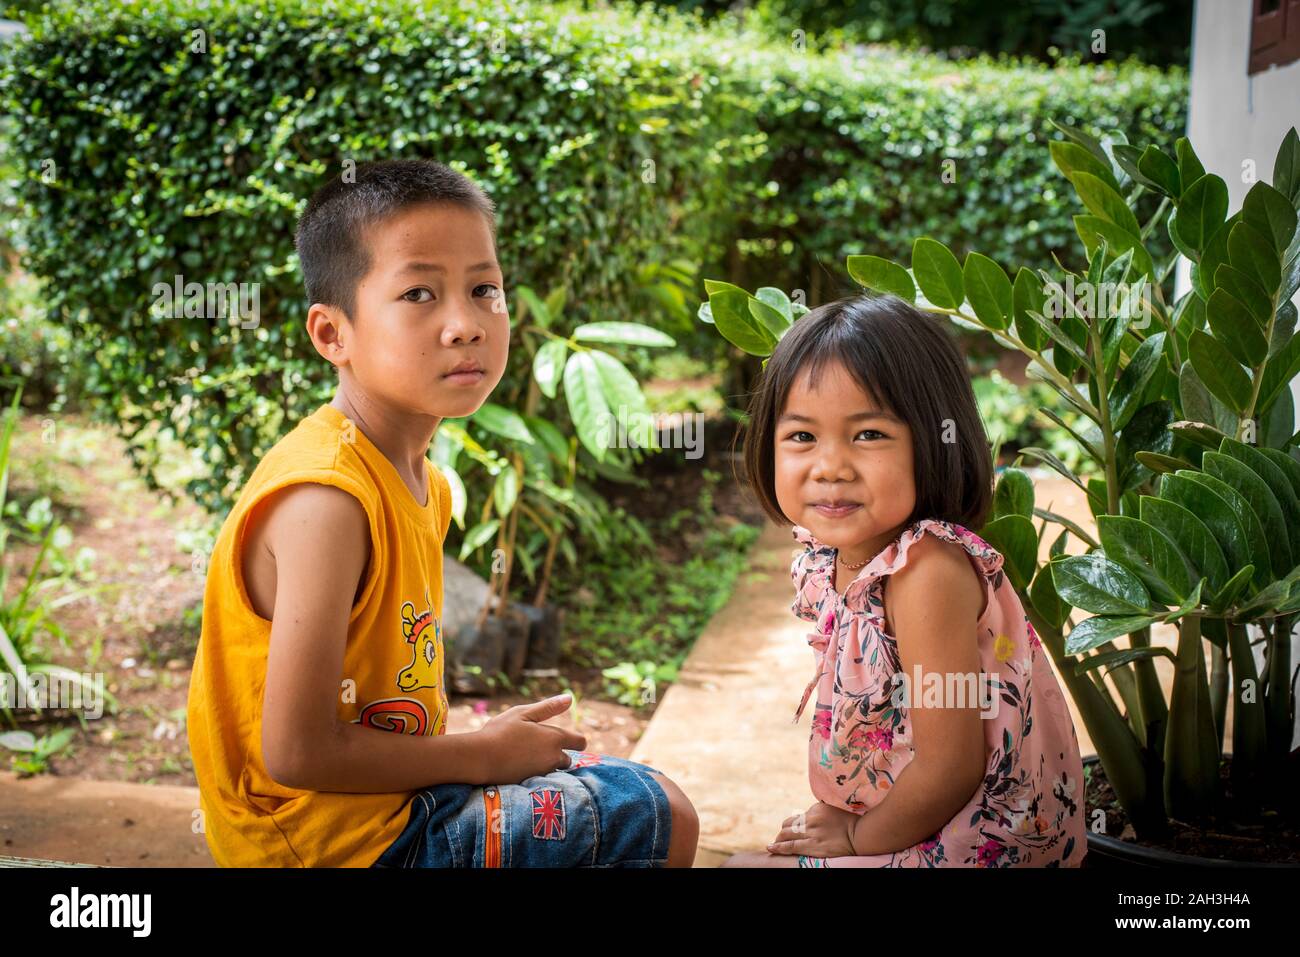 Laongam, Laos, dos niños sentados, Foto de stock